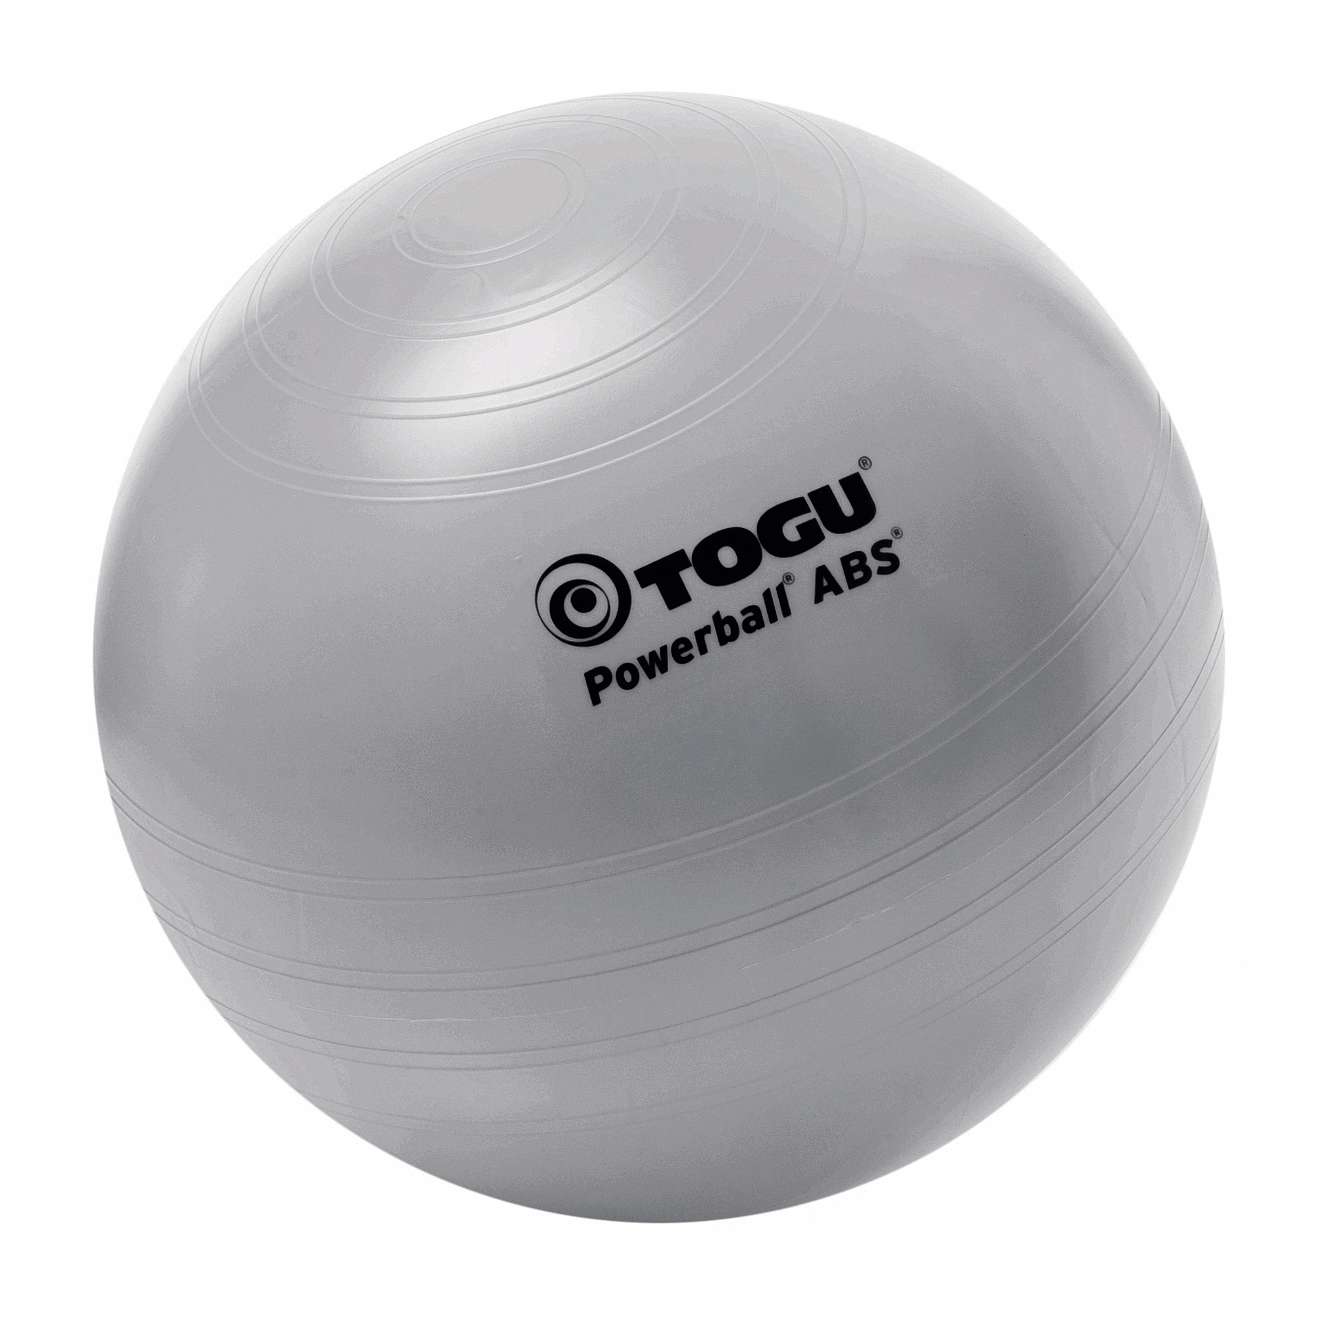 Togu Powerball "ABS", ø 45 cm von Togu